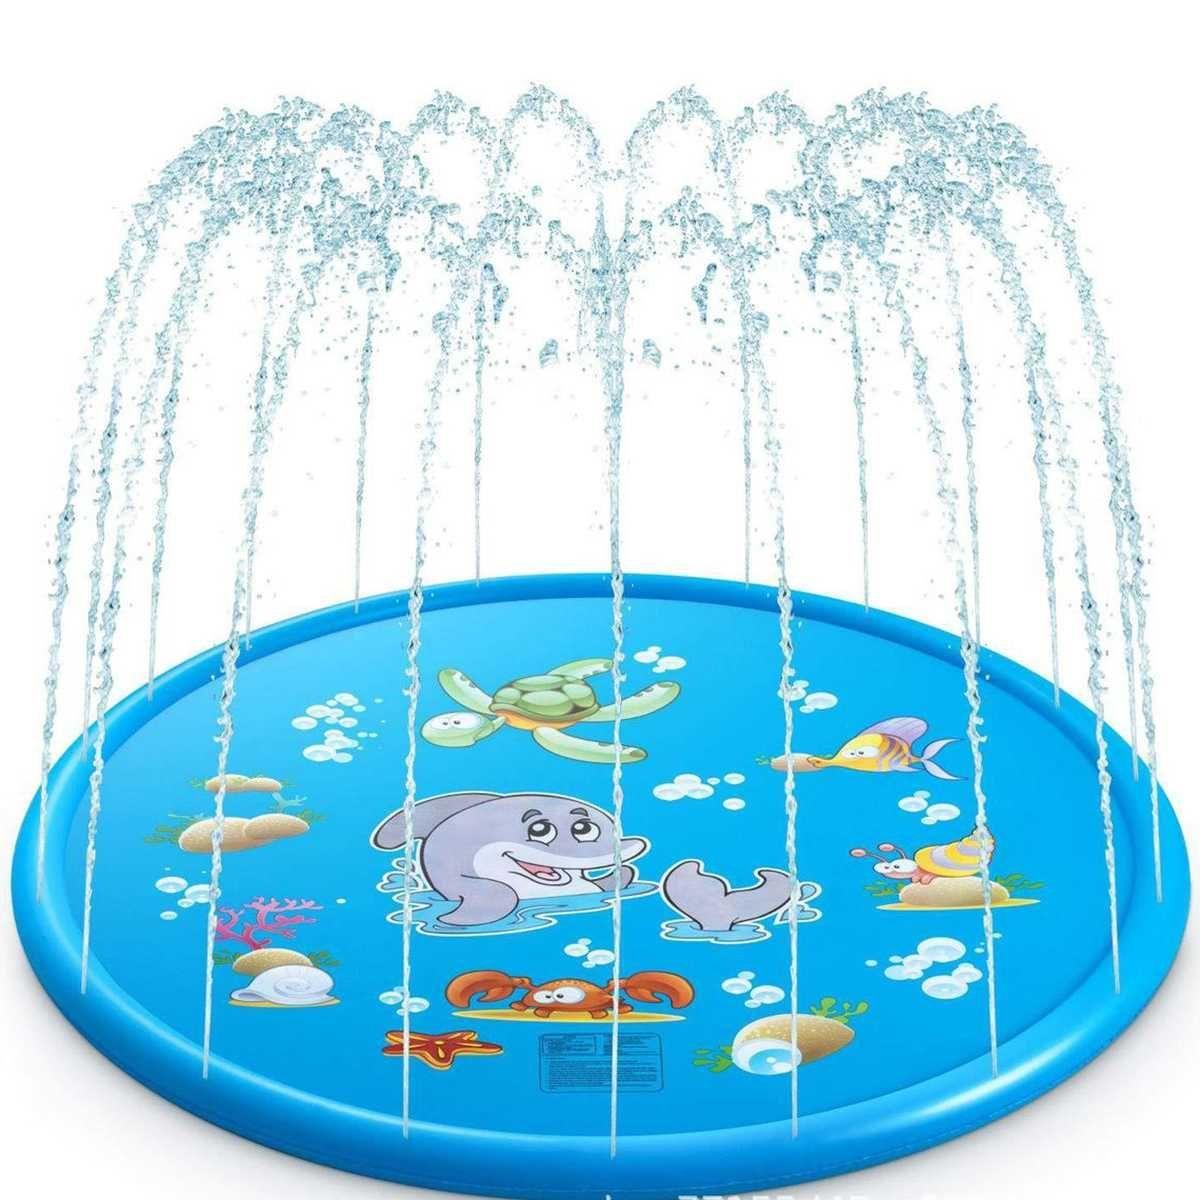 Children's pool with a fountain, garden mat - underwater world